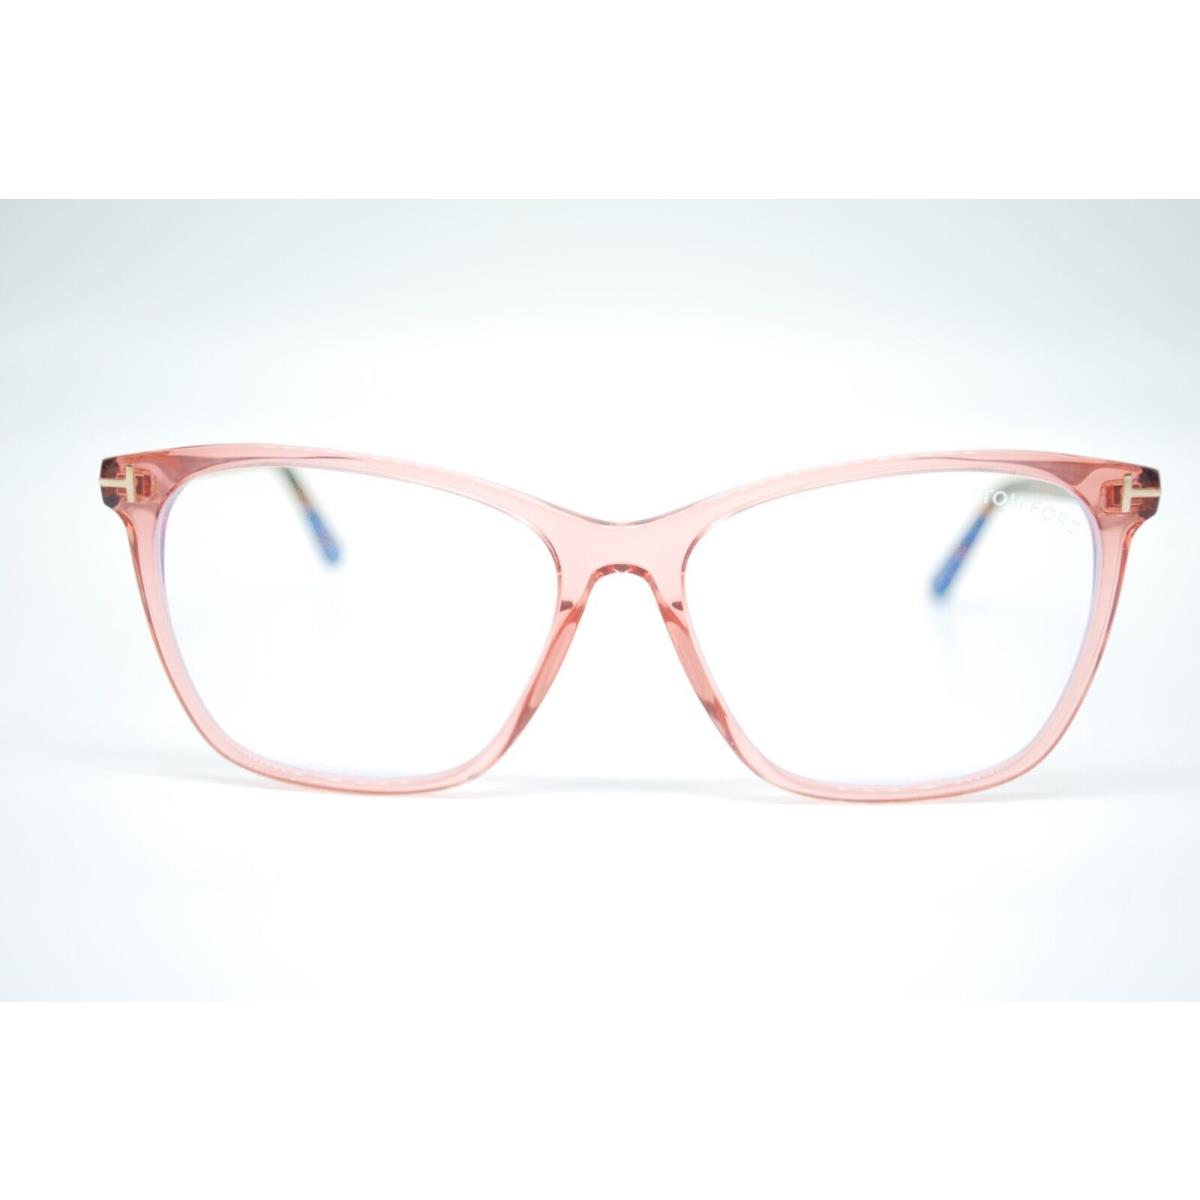 Tom Ford eyeglasses  - Frame: CORAL PINK 1